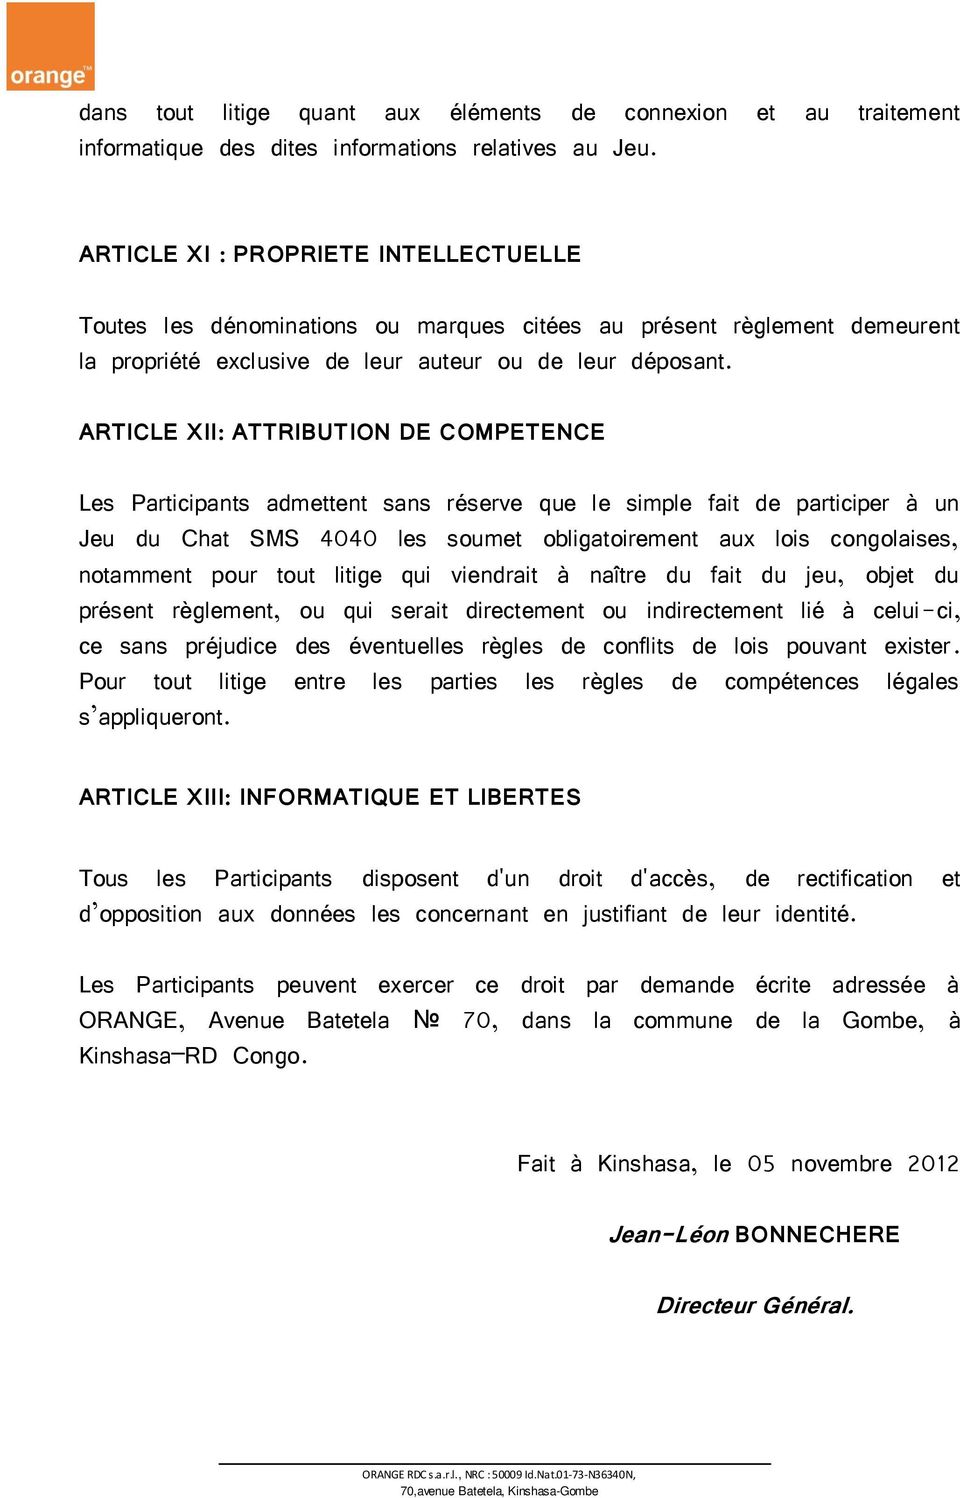 ARTICLE XII: ATTRIBUTION DE COMPETENCE Les Participants admettent sans réserve que le simple fait de participer à un Jeu du Chat SMS 4040 les soumet obligatoirement aux lois congolaises, notamment